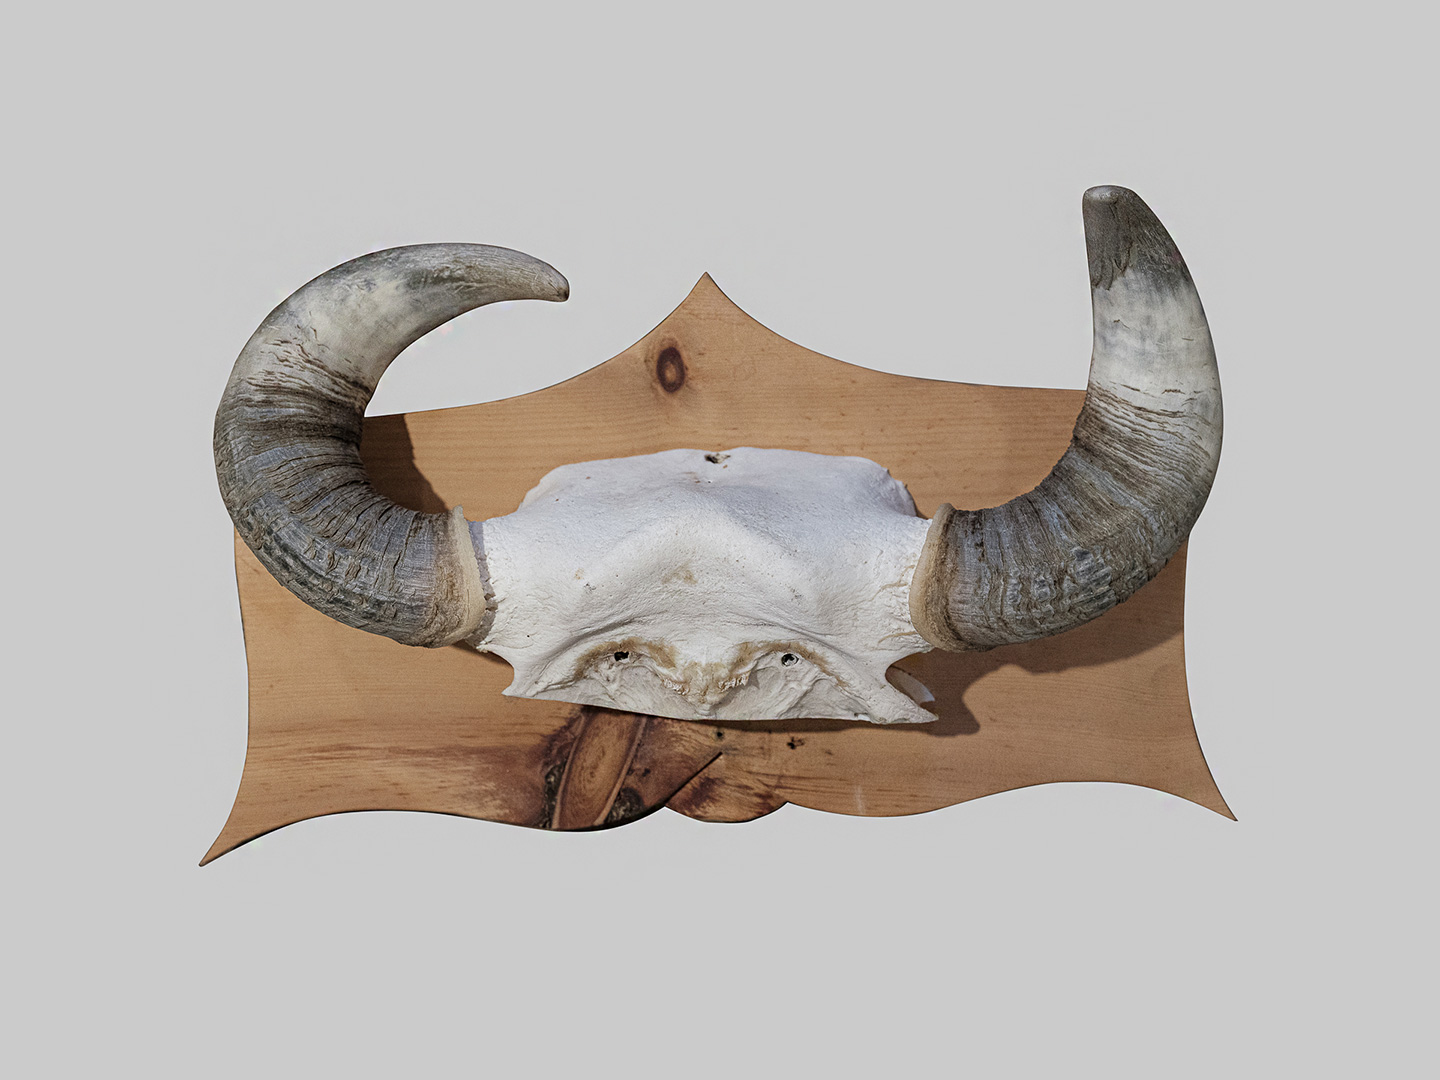 Le corna delle vacche più pregiate veniva conservate e appese sulle porte delle stalle come simbolo di protezione.